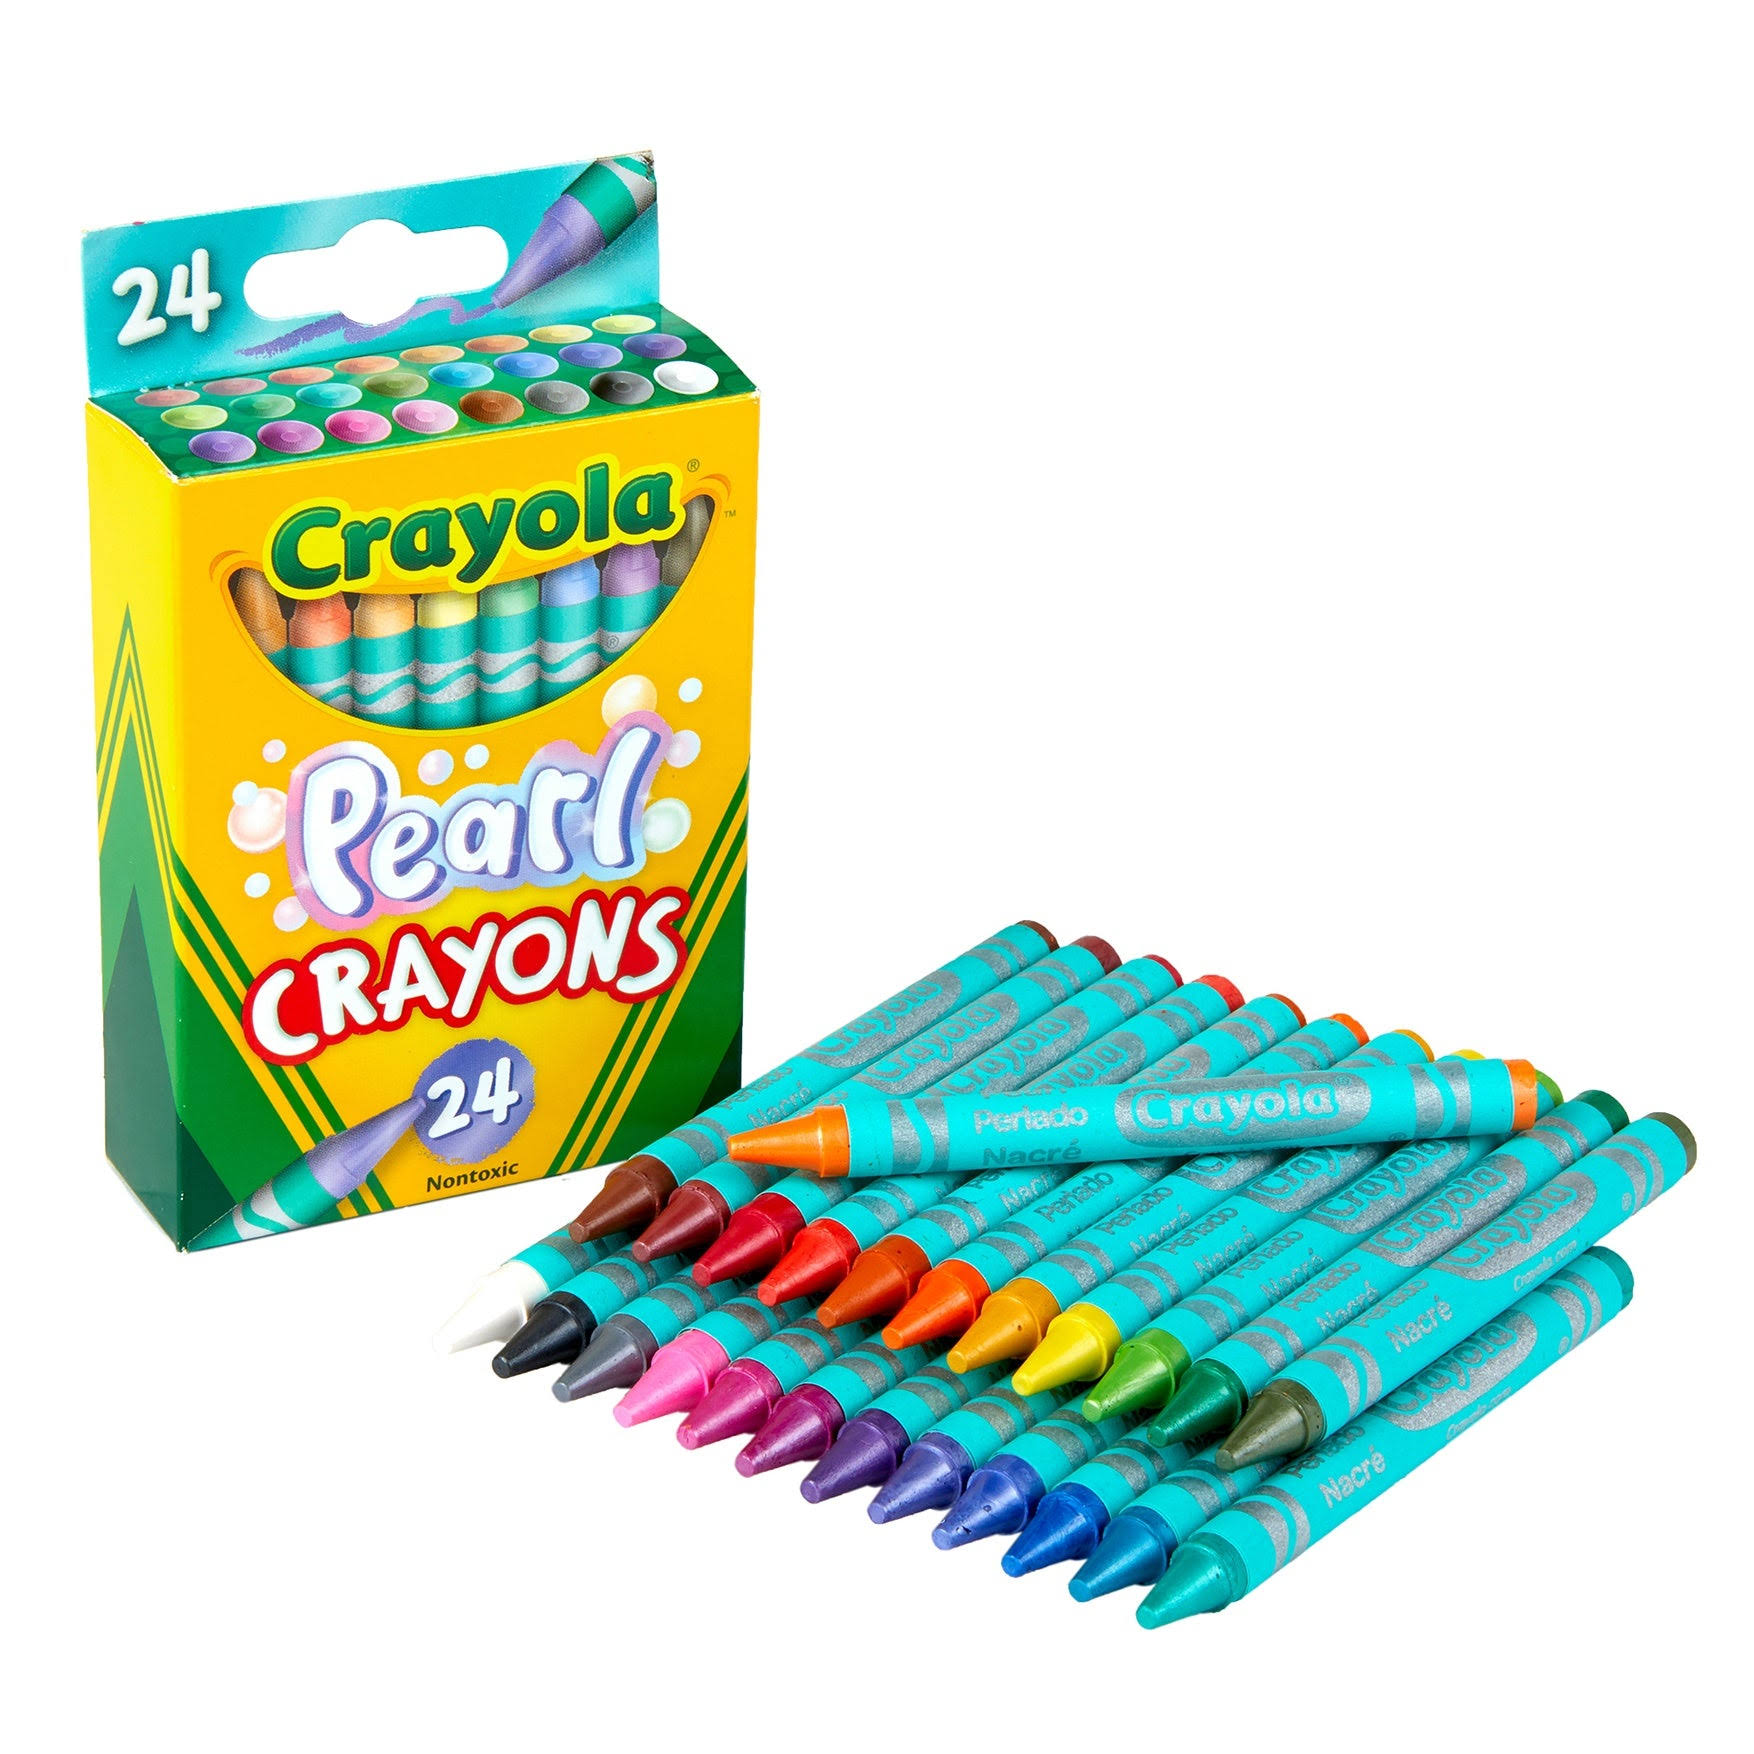 Crayola Colored Pencils - 12 pencils